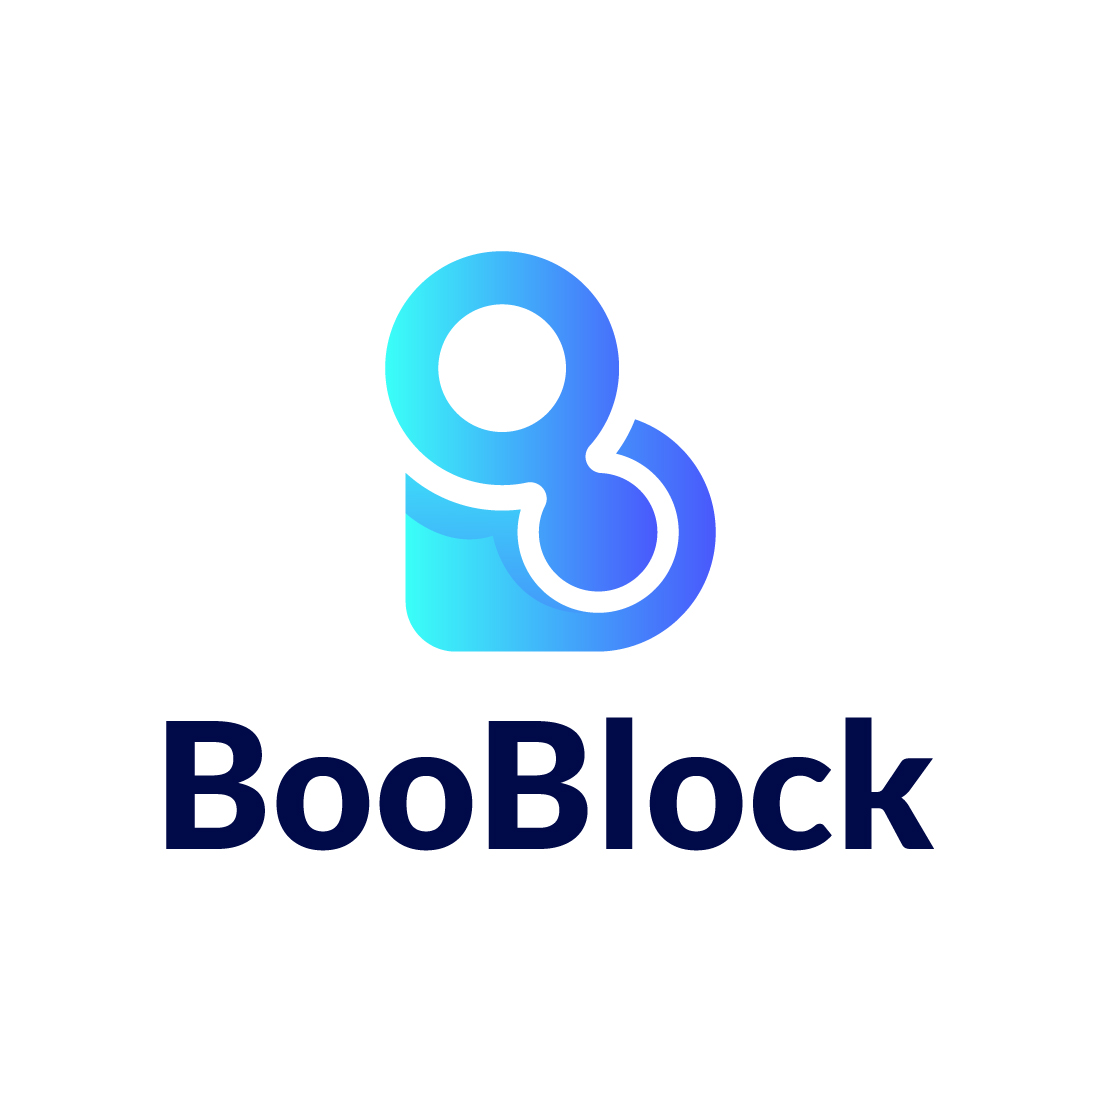 BooBlock logo design, letter "B", letter "O", technology logo preview image.